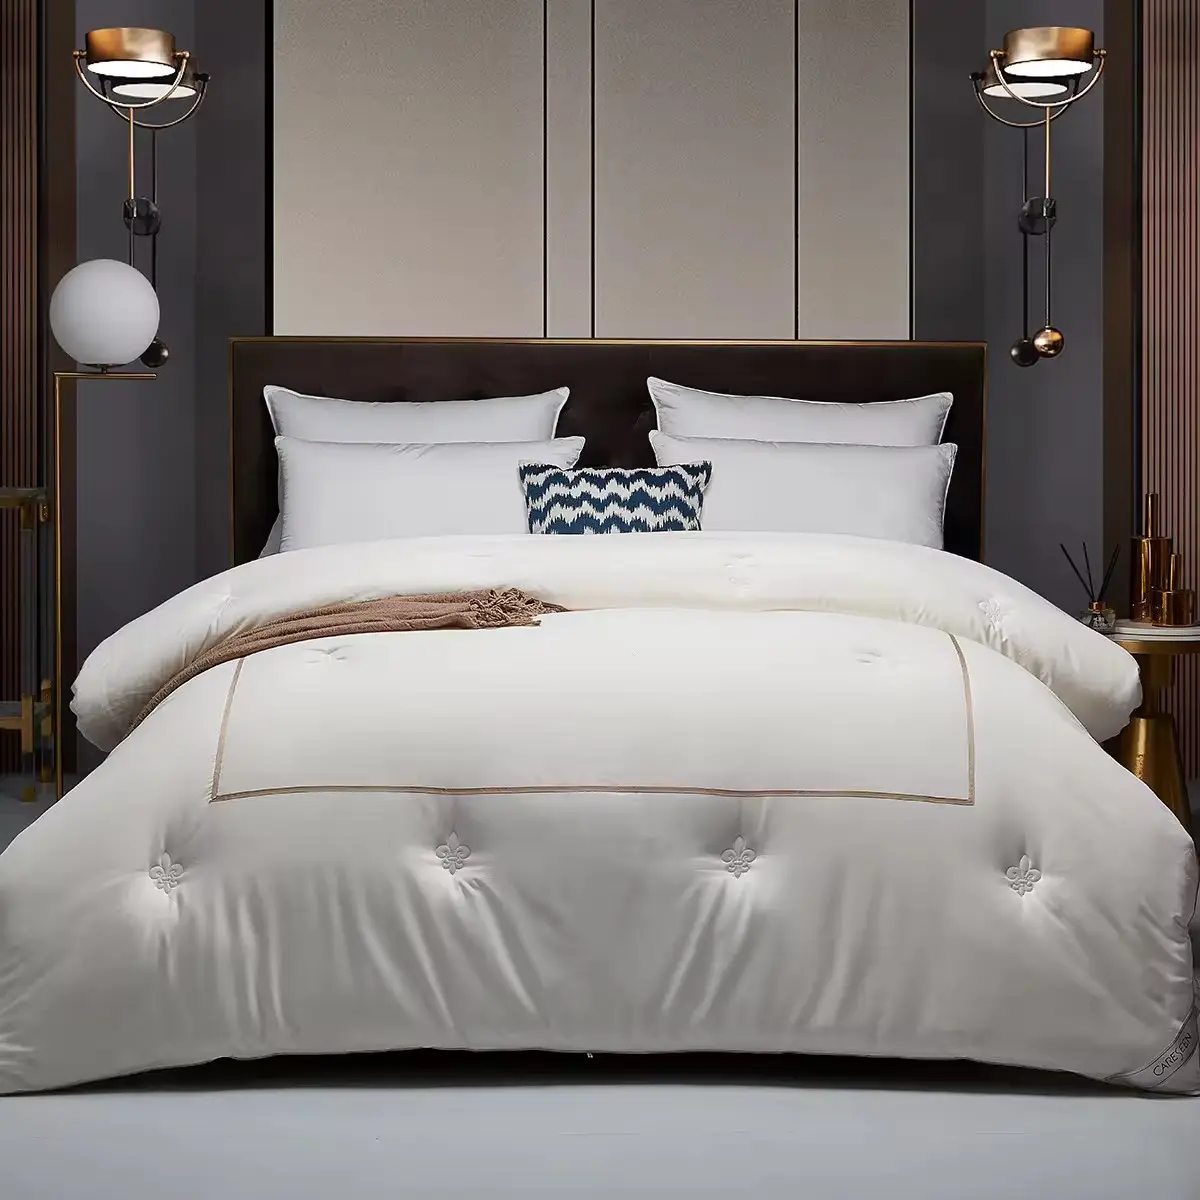 ملاءات سرير فندقية عالية الجودة 5 نجوم قطن 100% للبيع بالجملة مجموعة مستلزمات سرير